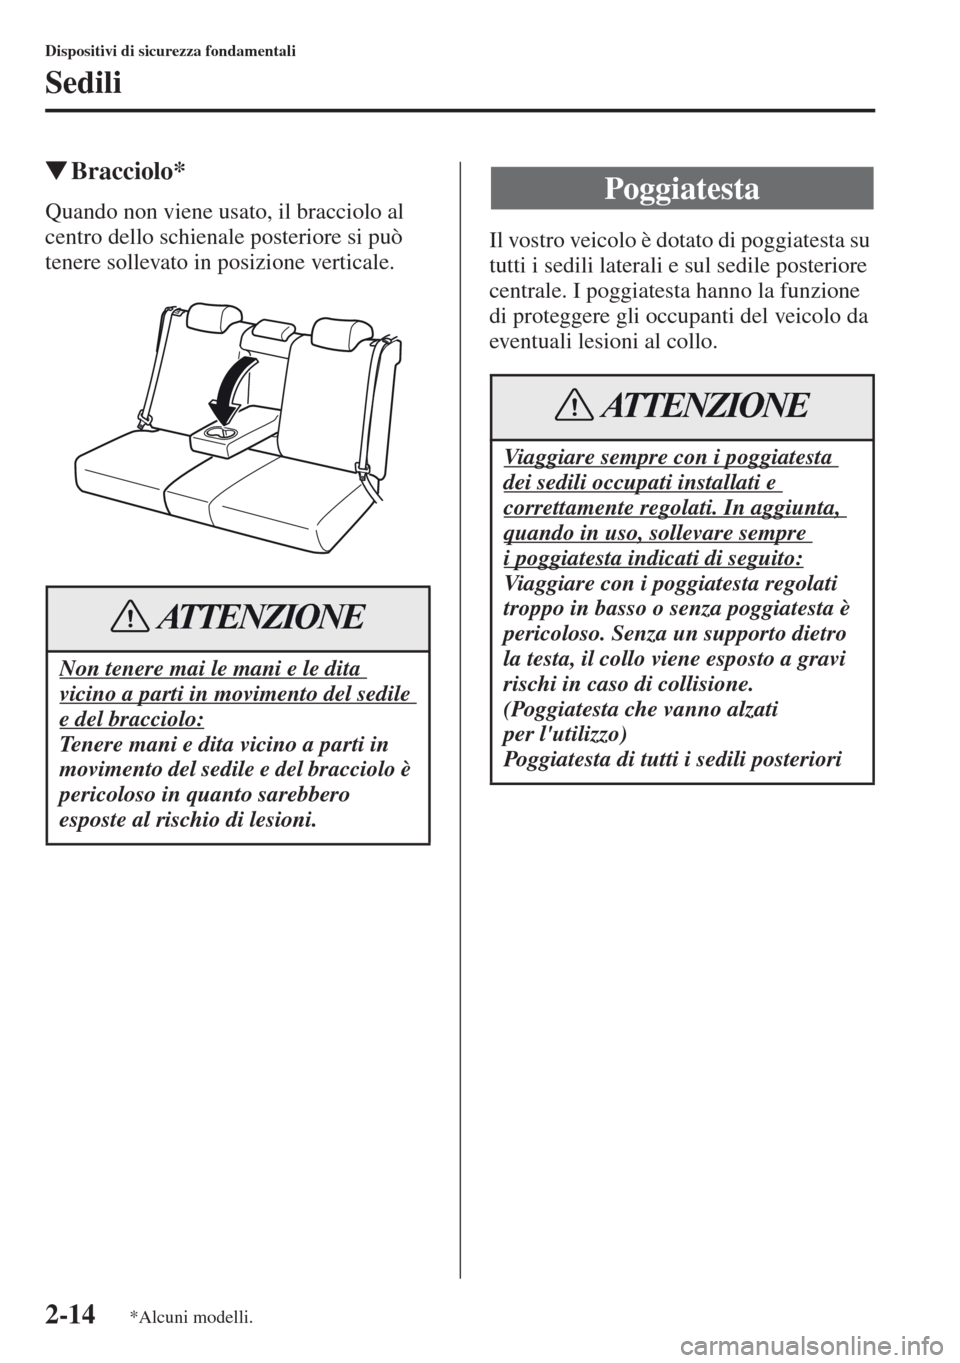 MAZDA MODEL CX-5 2013  Manuale del proprietario (in Italian) 2-14
Dispositivi di sicurezza fondamentali
Sedili
tBracciolo*
Quando non viene usato, il bracciolo al 
centro dello schienale posteriore si può 
tenere sollevato in posizione verticale.Il vostro veic